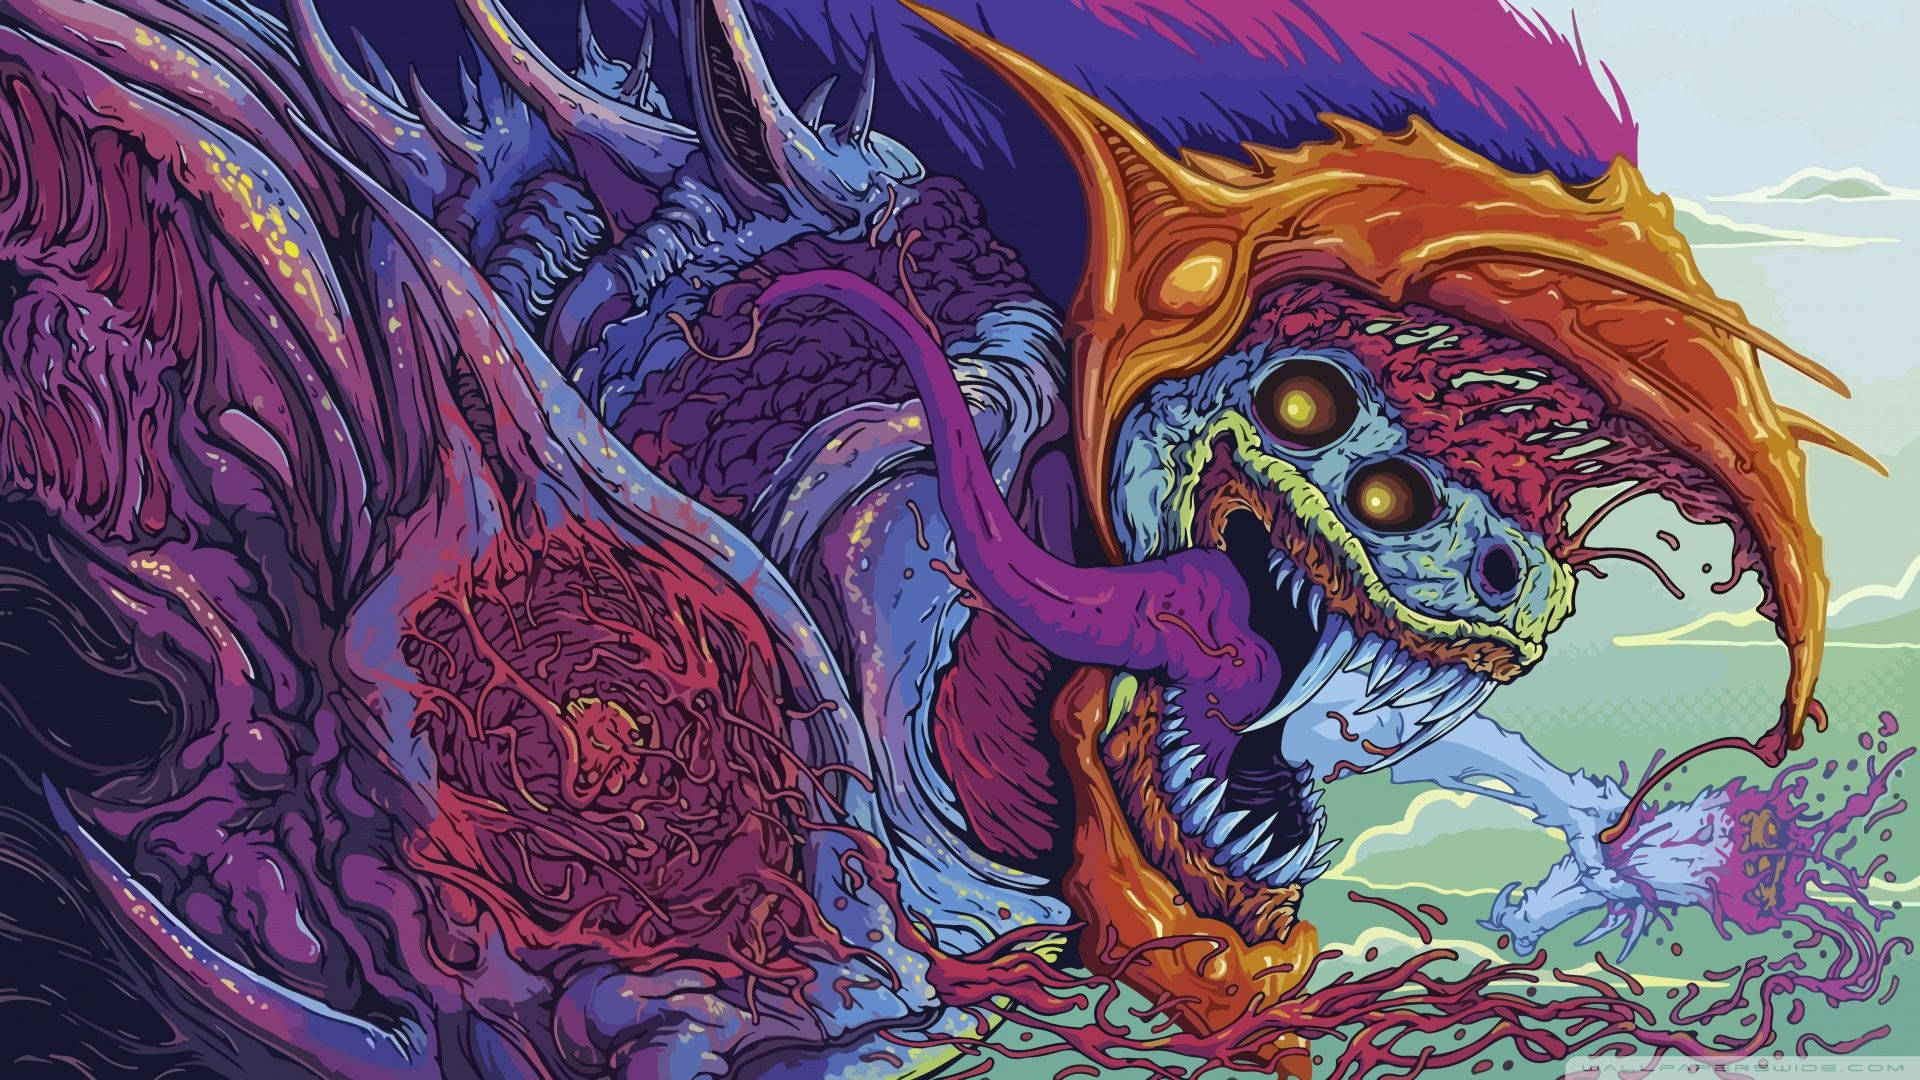 "Colorful, Fearsome Dragon Art" Wallpaper